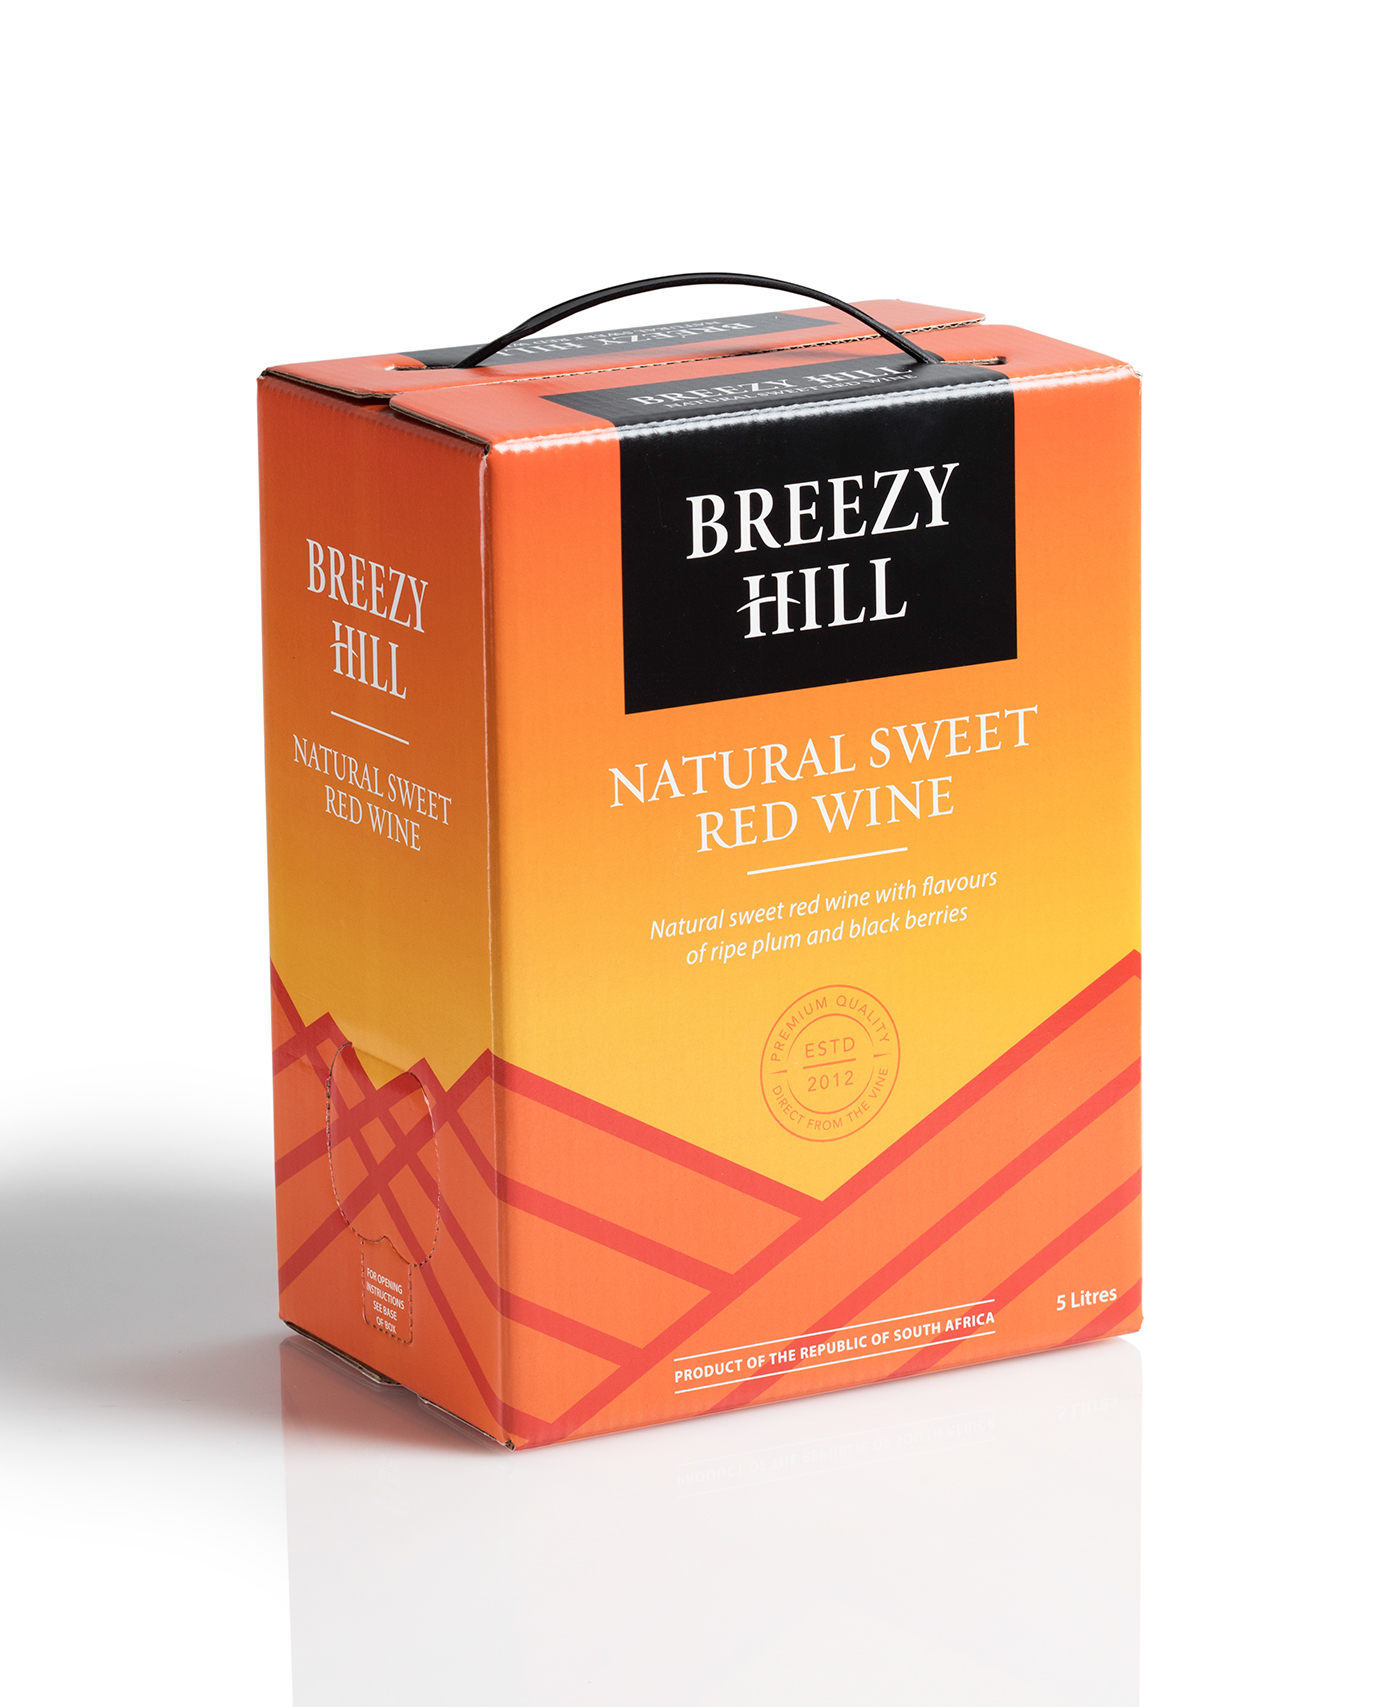 wine box wine Label colour Breeze hill